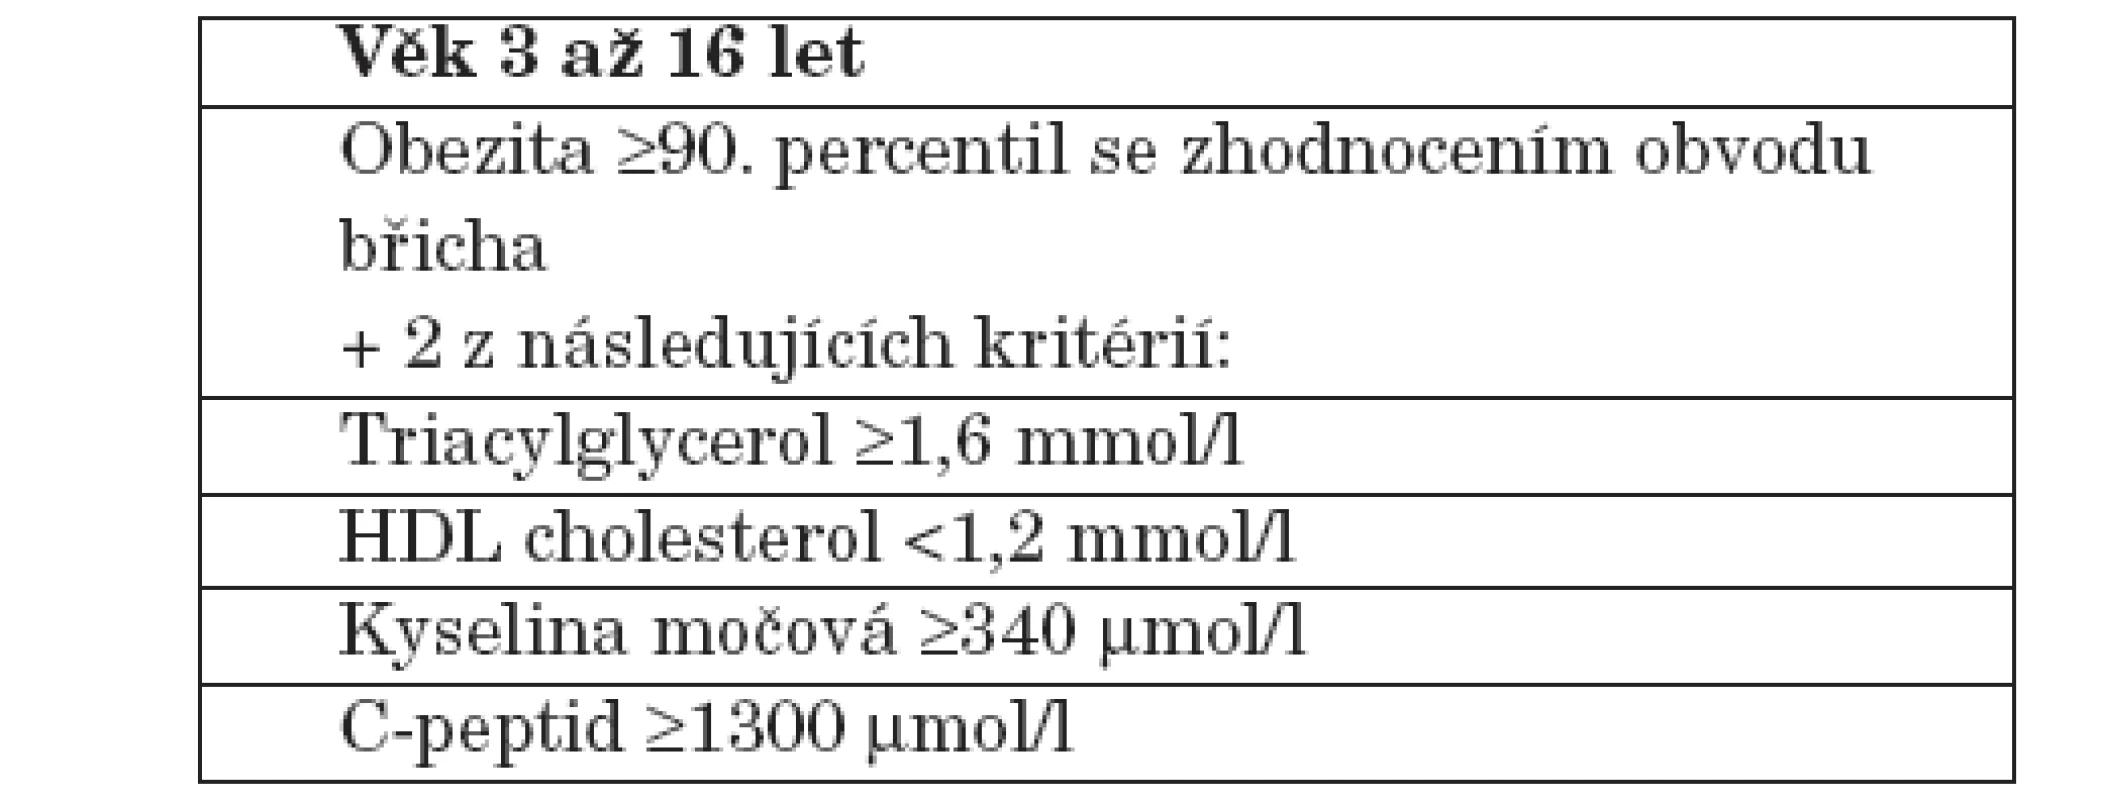 Definice premetabolického syndromu dětské obezitologické ambulance FN Motol Praha.